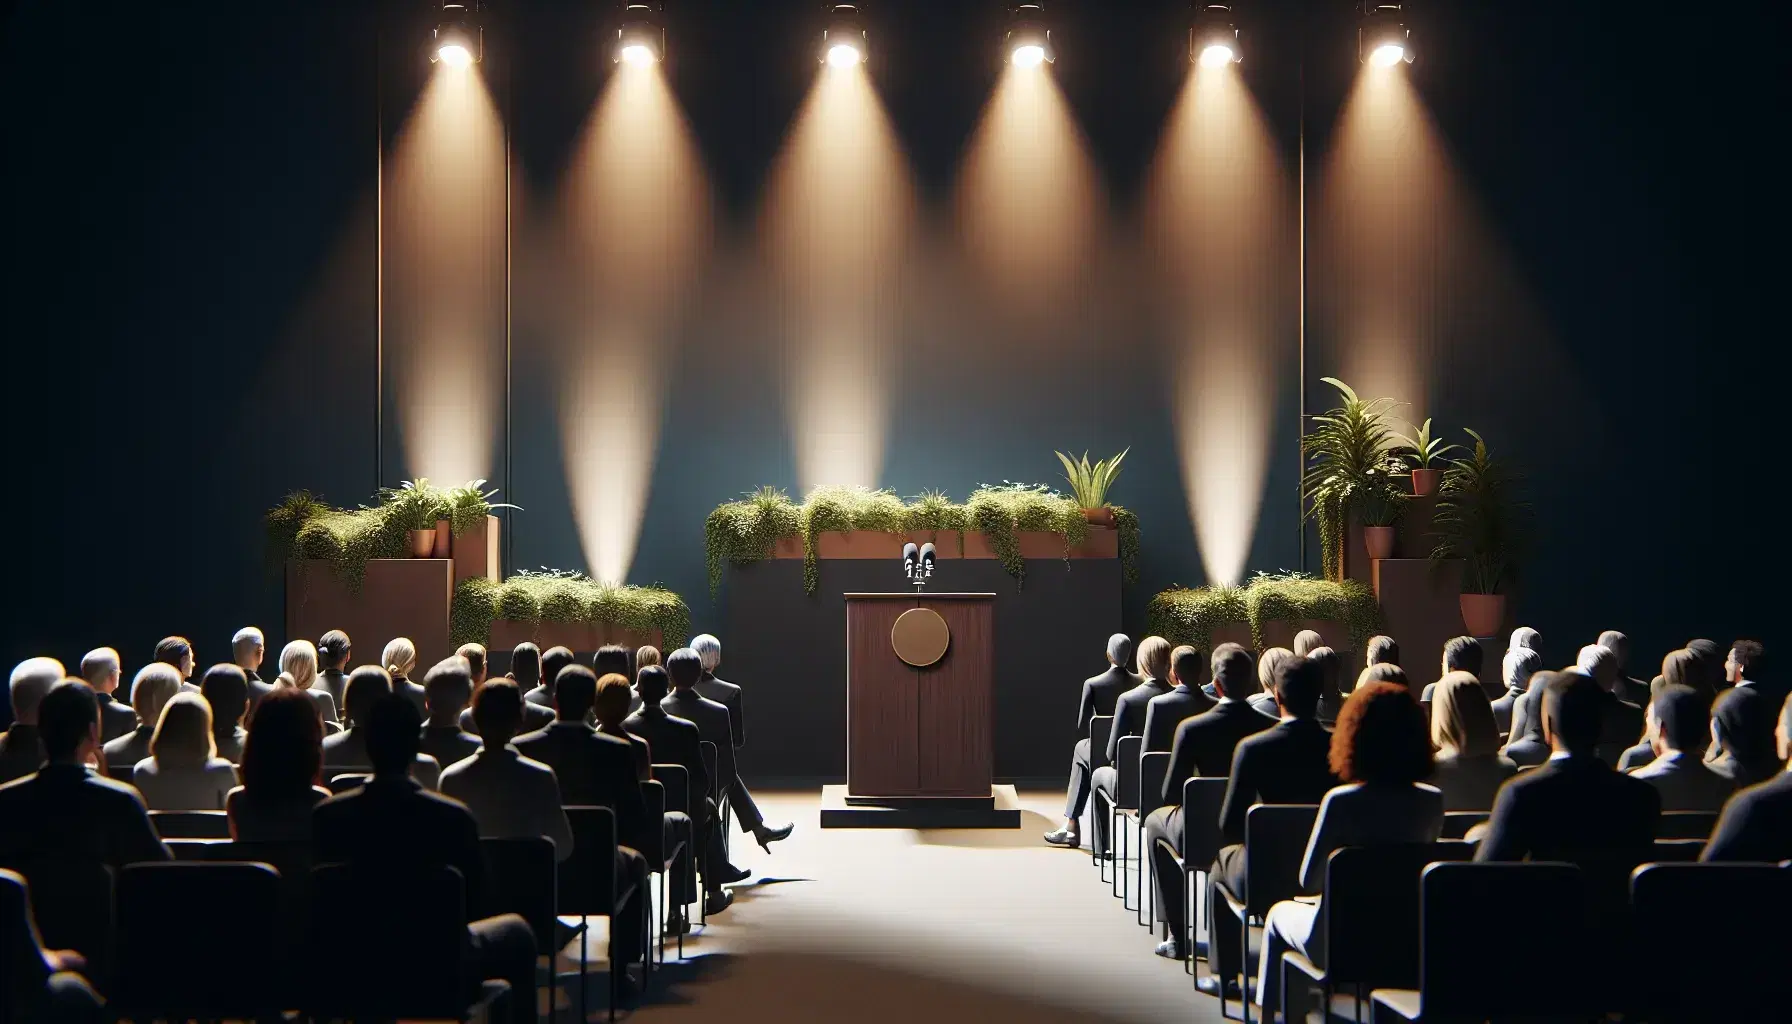 Escenario iluminado con luces cálidas, podio de madera marrón oscuro al centro, público diverso sentado, micrófono en podio y planta verde a la derecha.